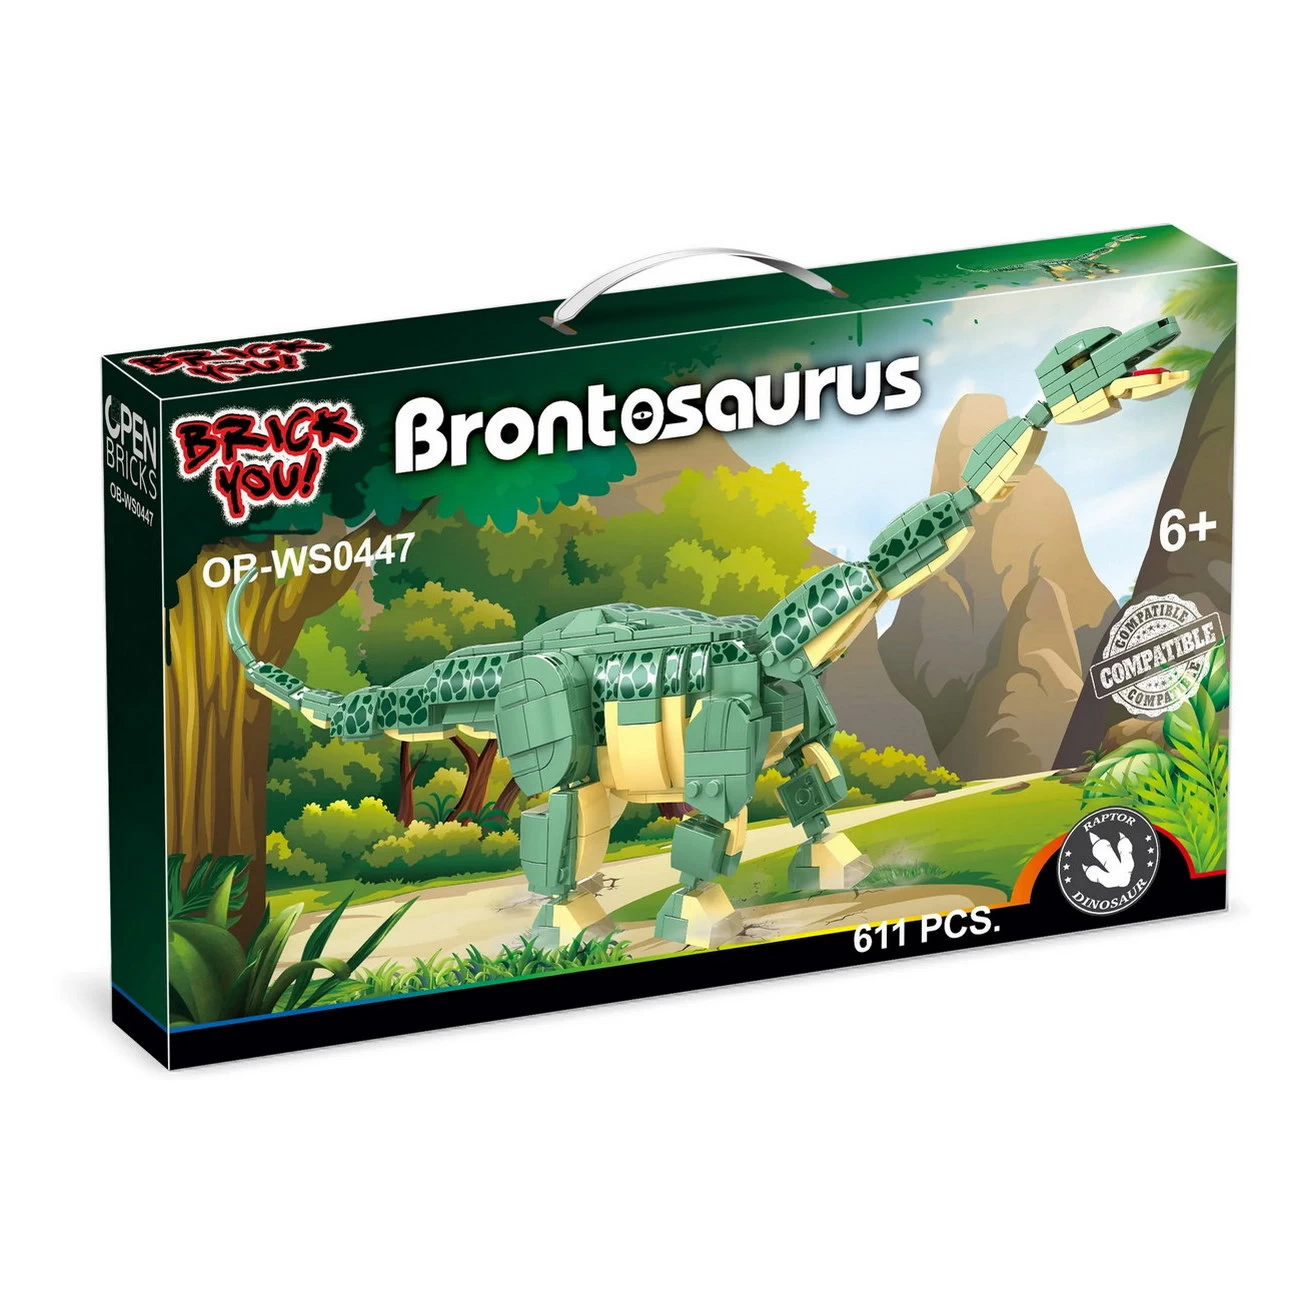 Brontosaurus OPEN BRICKS